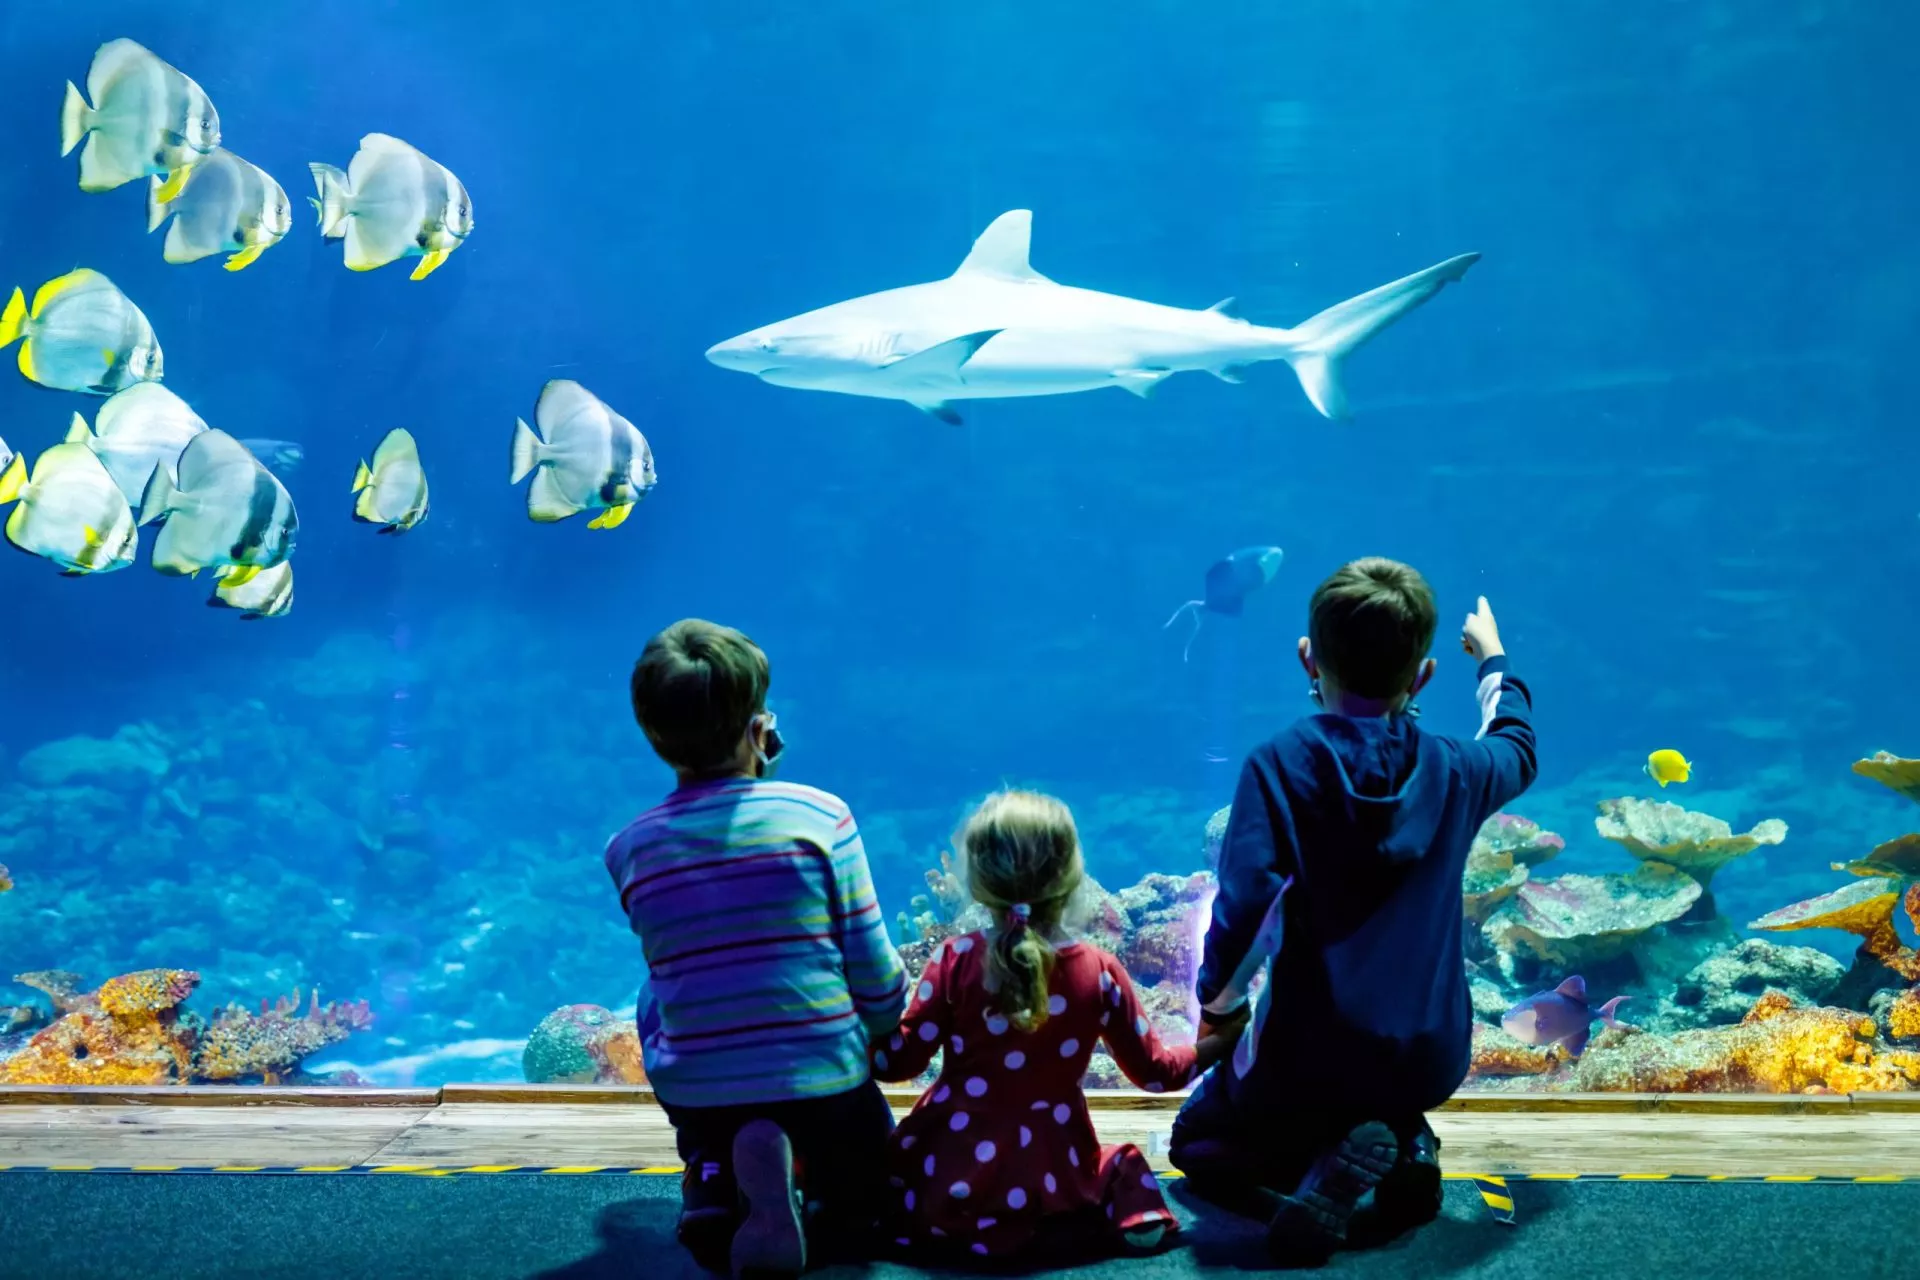 Family visit to the aquarium